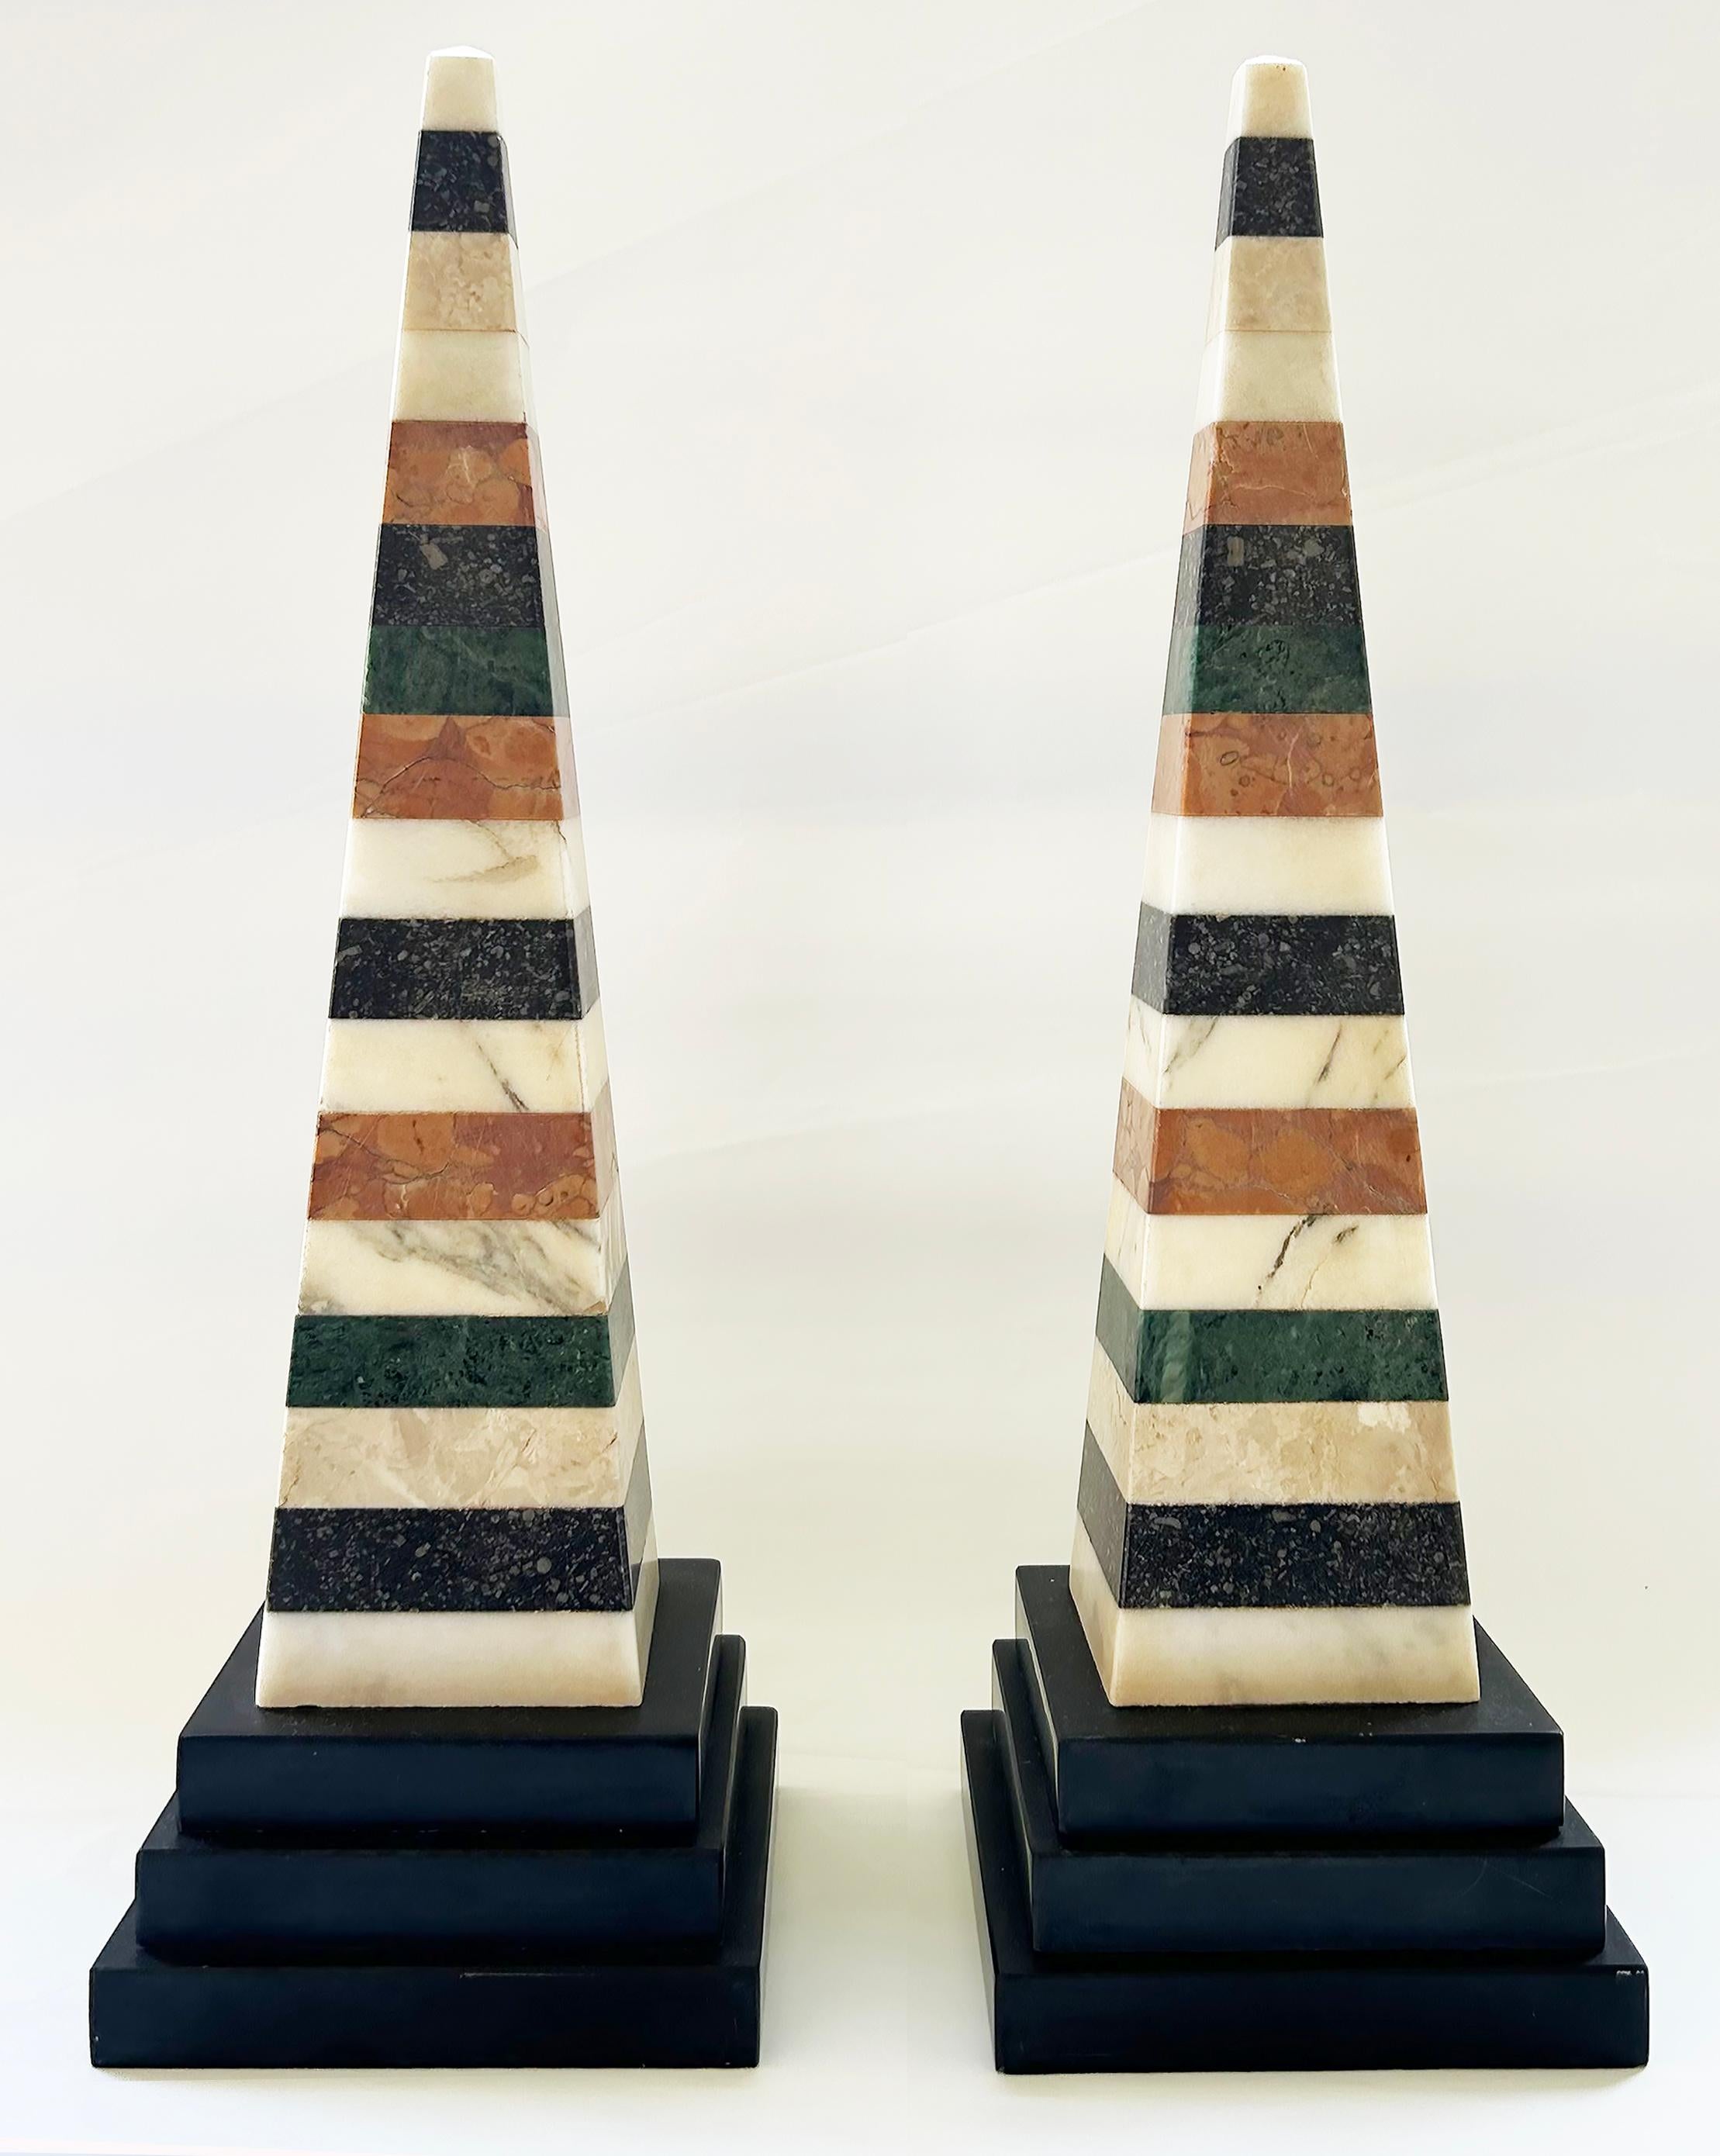 Grand Tour Italian Specimen Marble Pair of Lovely Obelisks

Nous proposons à la vente une magnifique paire d'obélisques italiens de la période du Grand Tour, créés à partir de morceaux de marbre empilés. Les obélisques sont frappants et élégants et